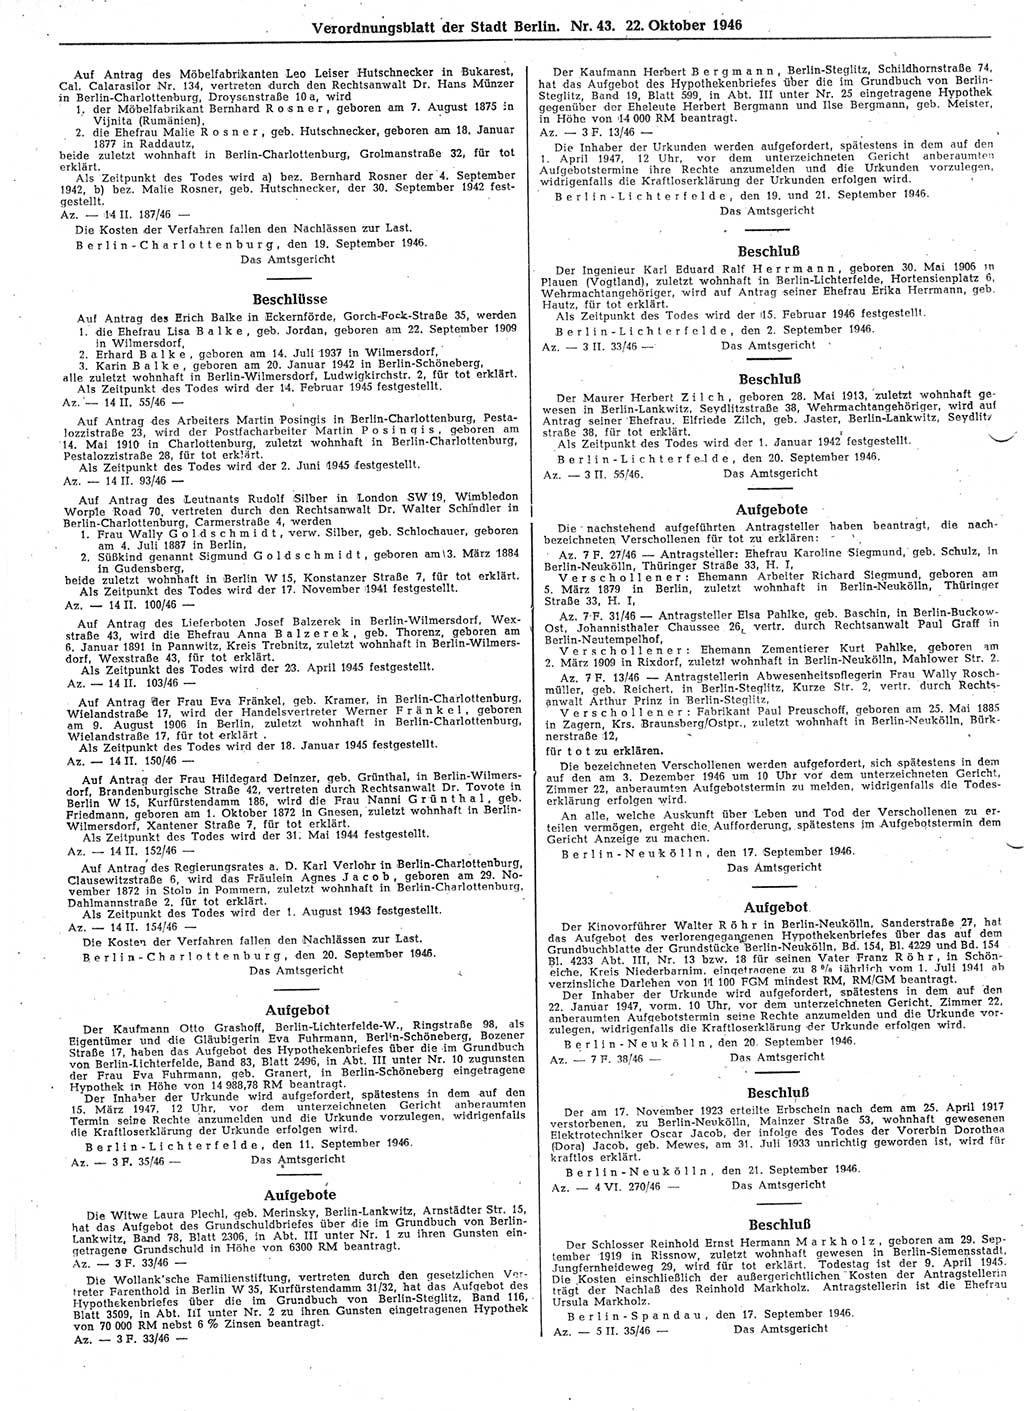 Verordnungsblatt (VOBl.) der Stadt Berlin, für Groß-Berlin 1946, Seite 394 (VOBl. Bln. 1946, S. 394)